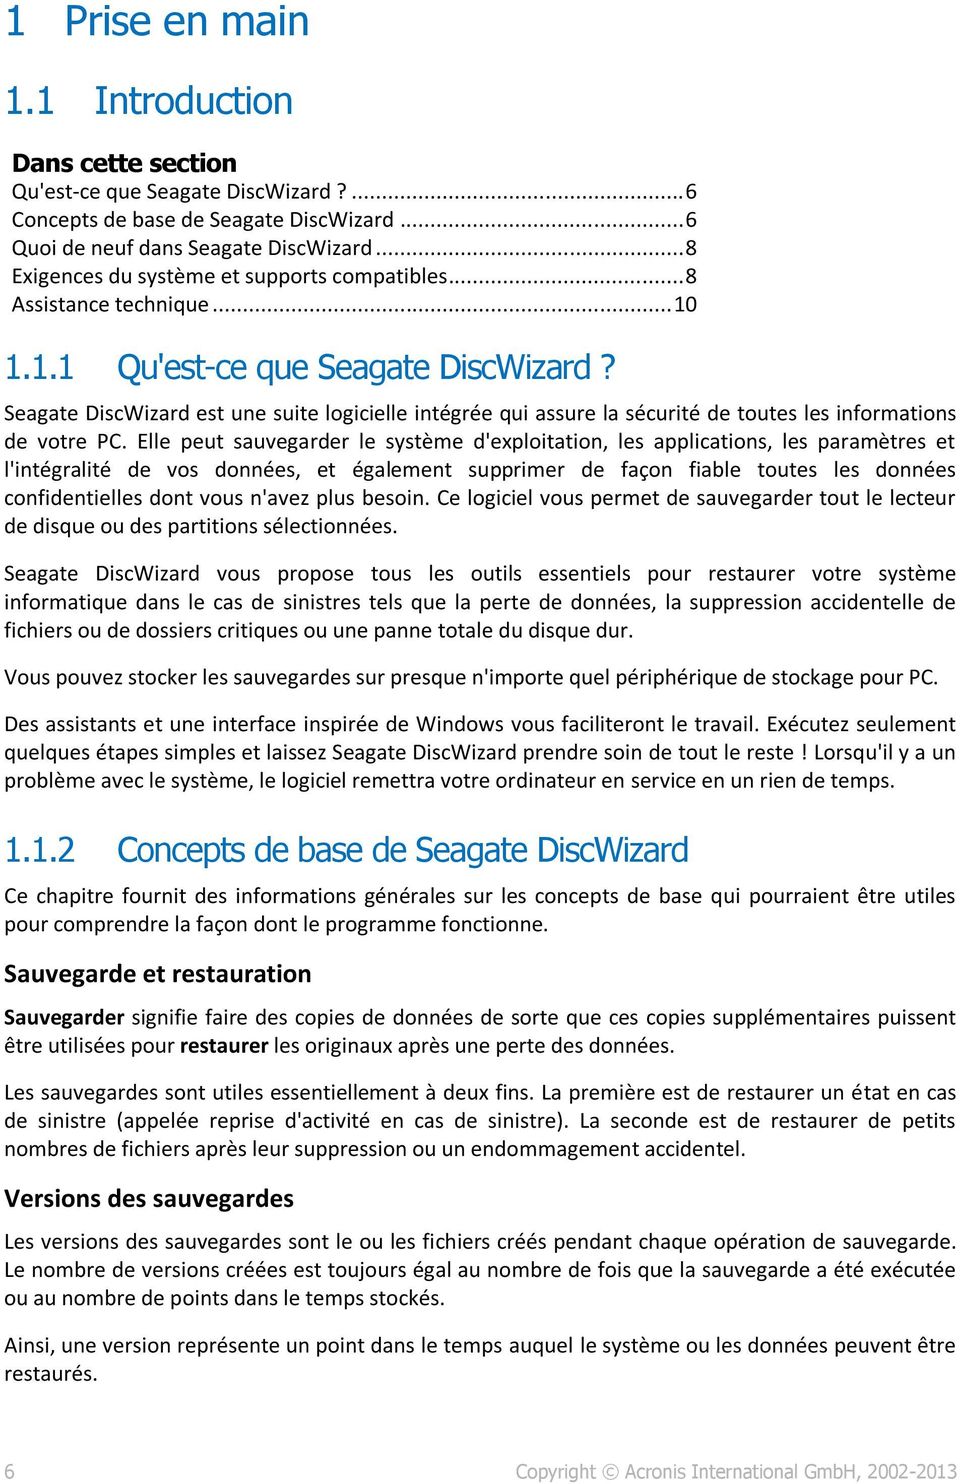 Seagate DiscWizard est une suite logicielle intégrée qui assure la sécurité de toutes les informations de votre PC.